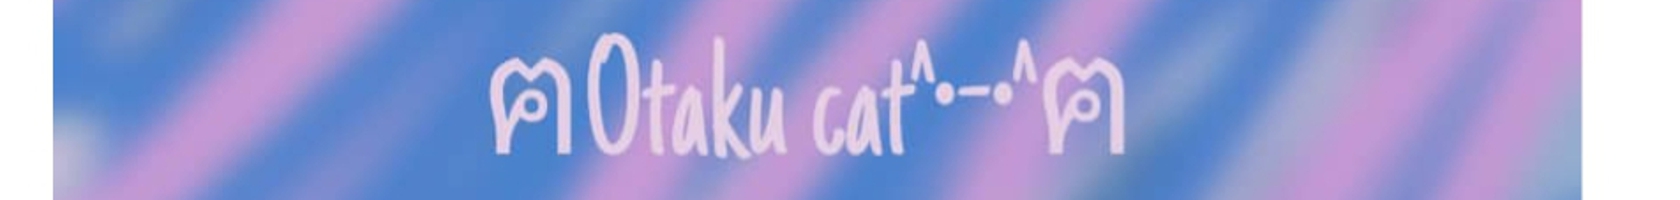  ฅOtaku cat^•-•^ฅفالو=فالو